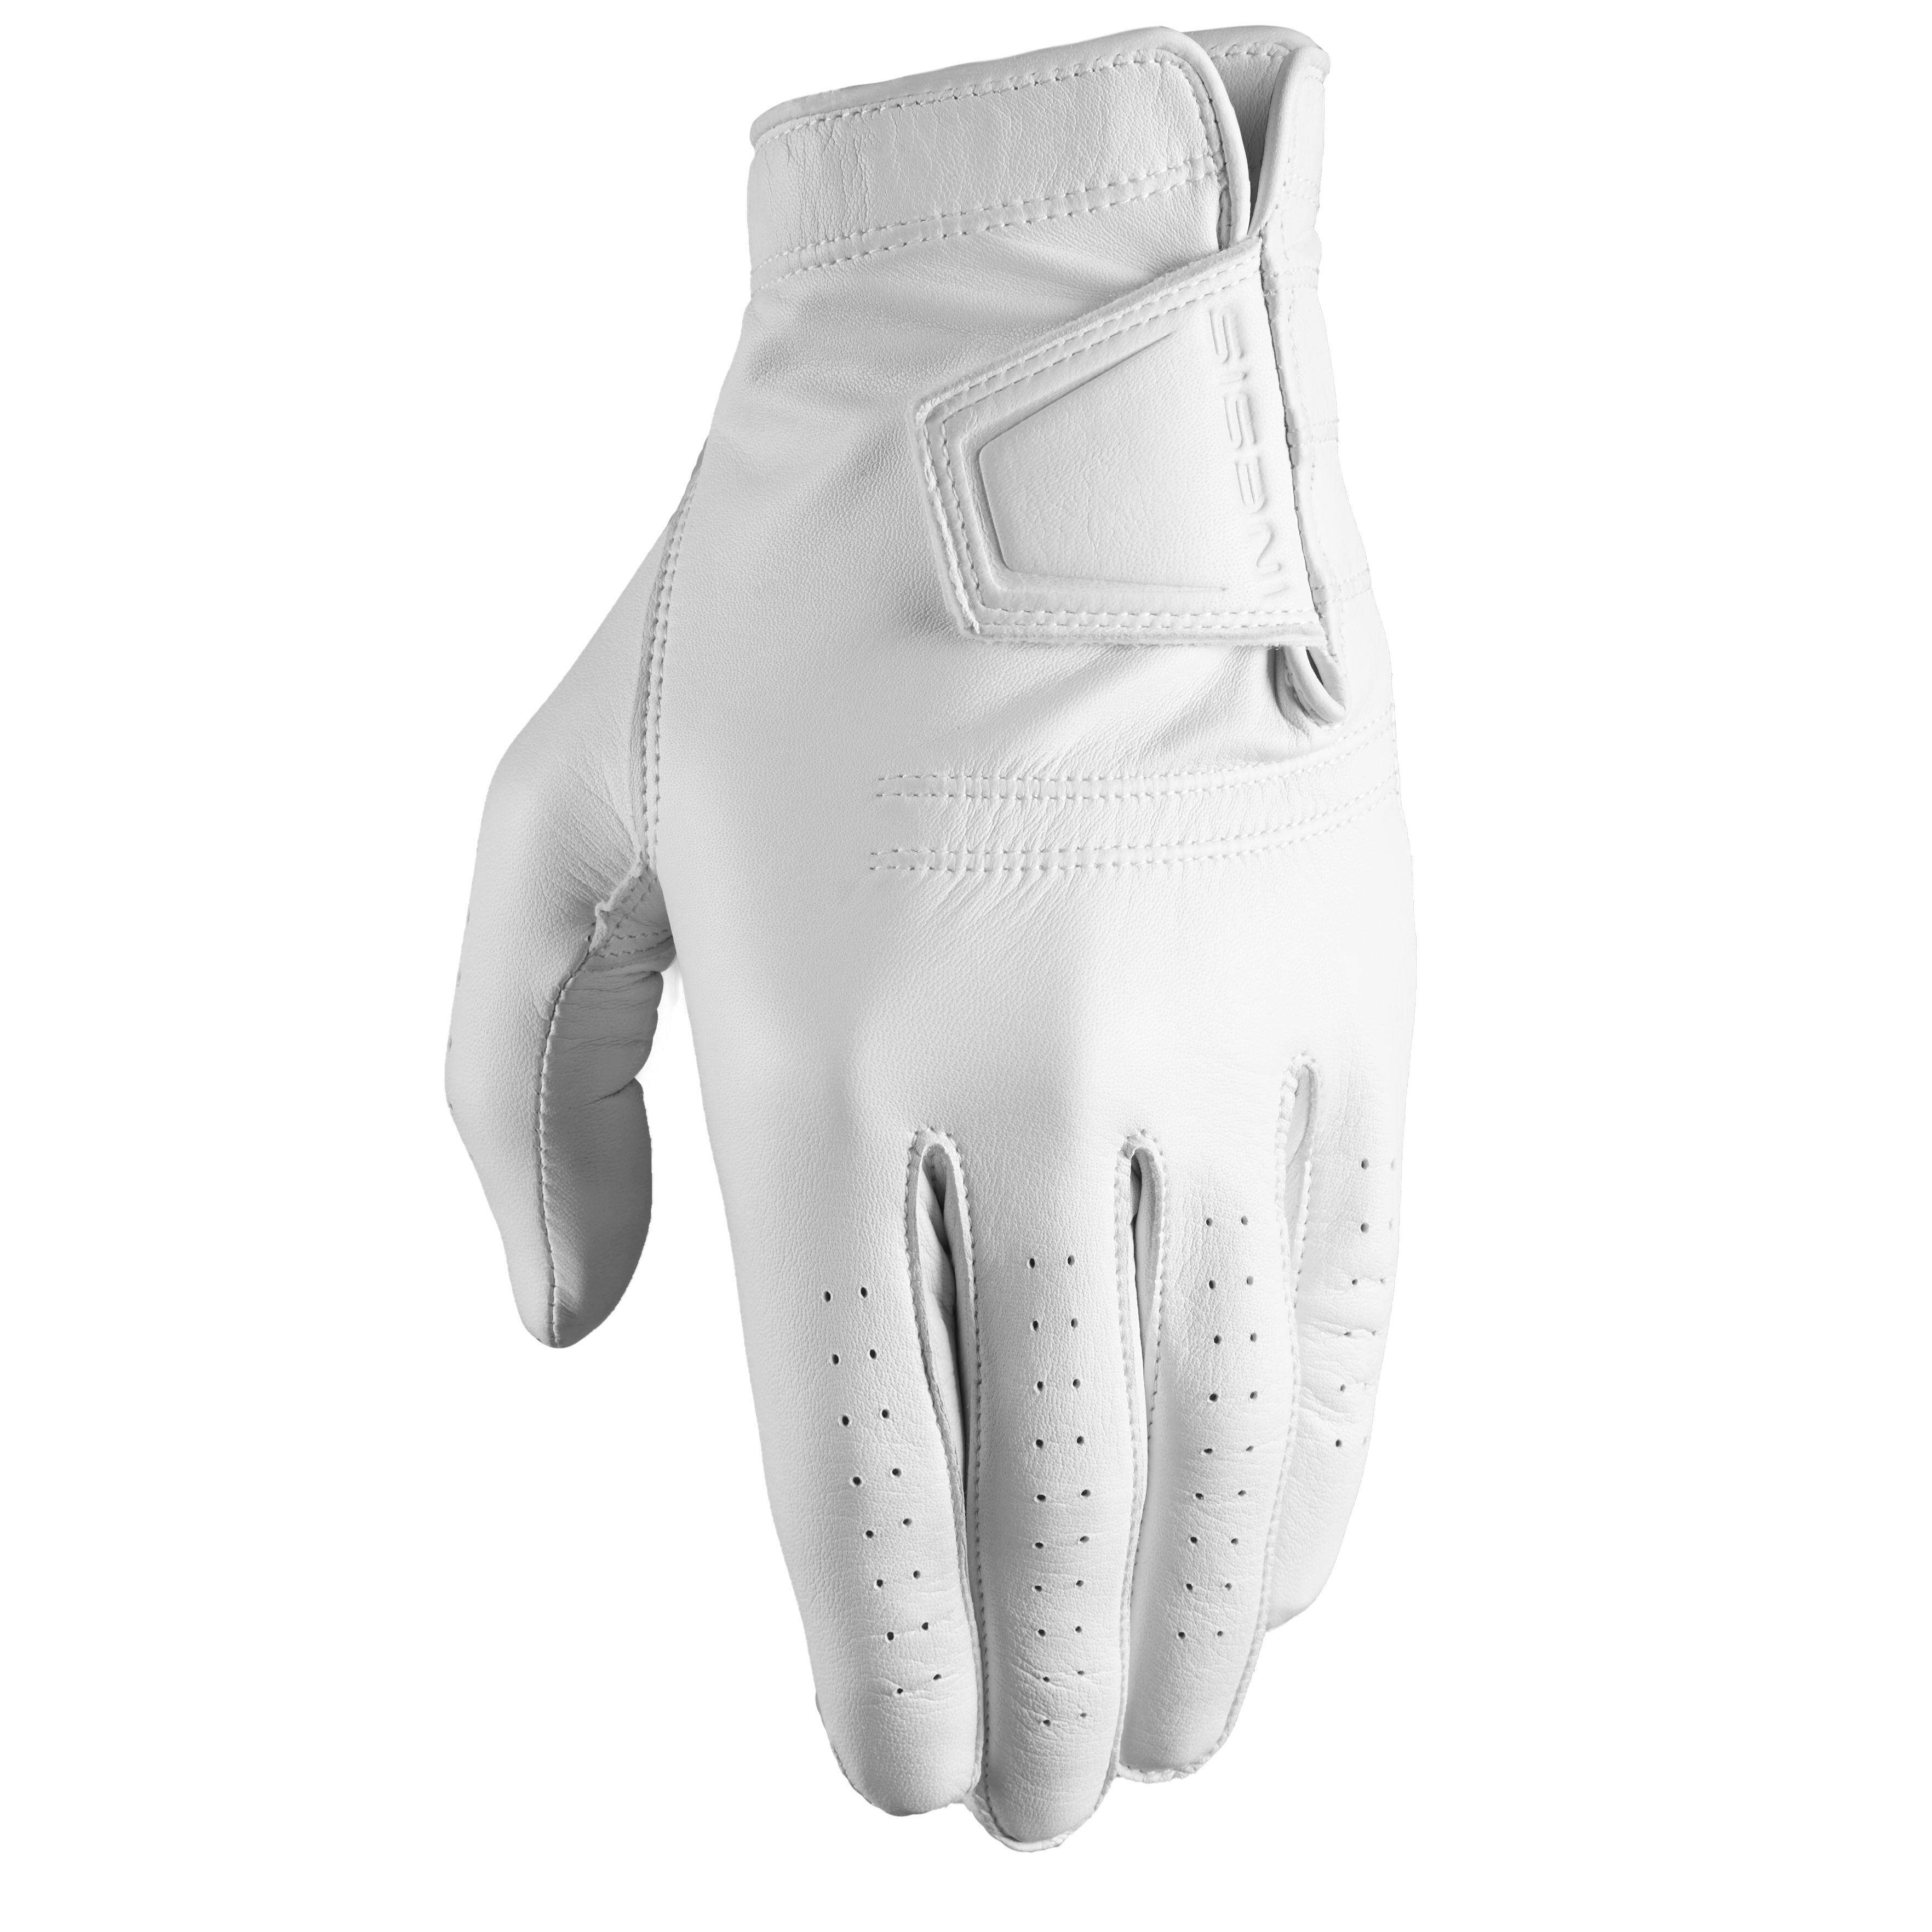 [ส่งฟรี ] ถุงมือกอล์ฟสำหรับผู้ชายถนัดขวารุ่น Tour (สีขาว) Men's golf Tour right-handed glove white Golf glove men Golf gloves ถุงมือกอล์ฟ ถุงมือกอล์ฟชาย ถุงมือกอฟล์ ของแท้ รับประกัน